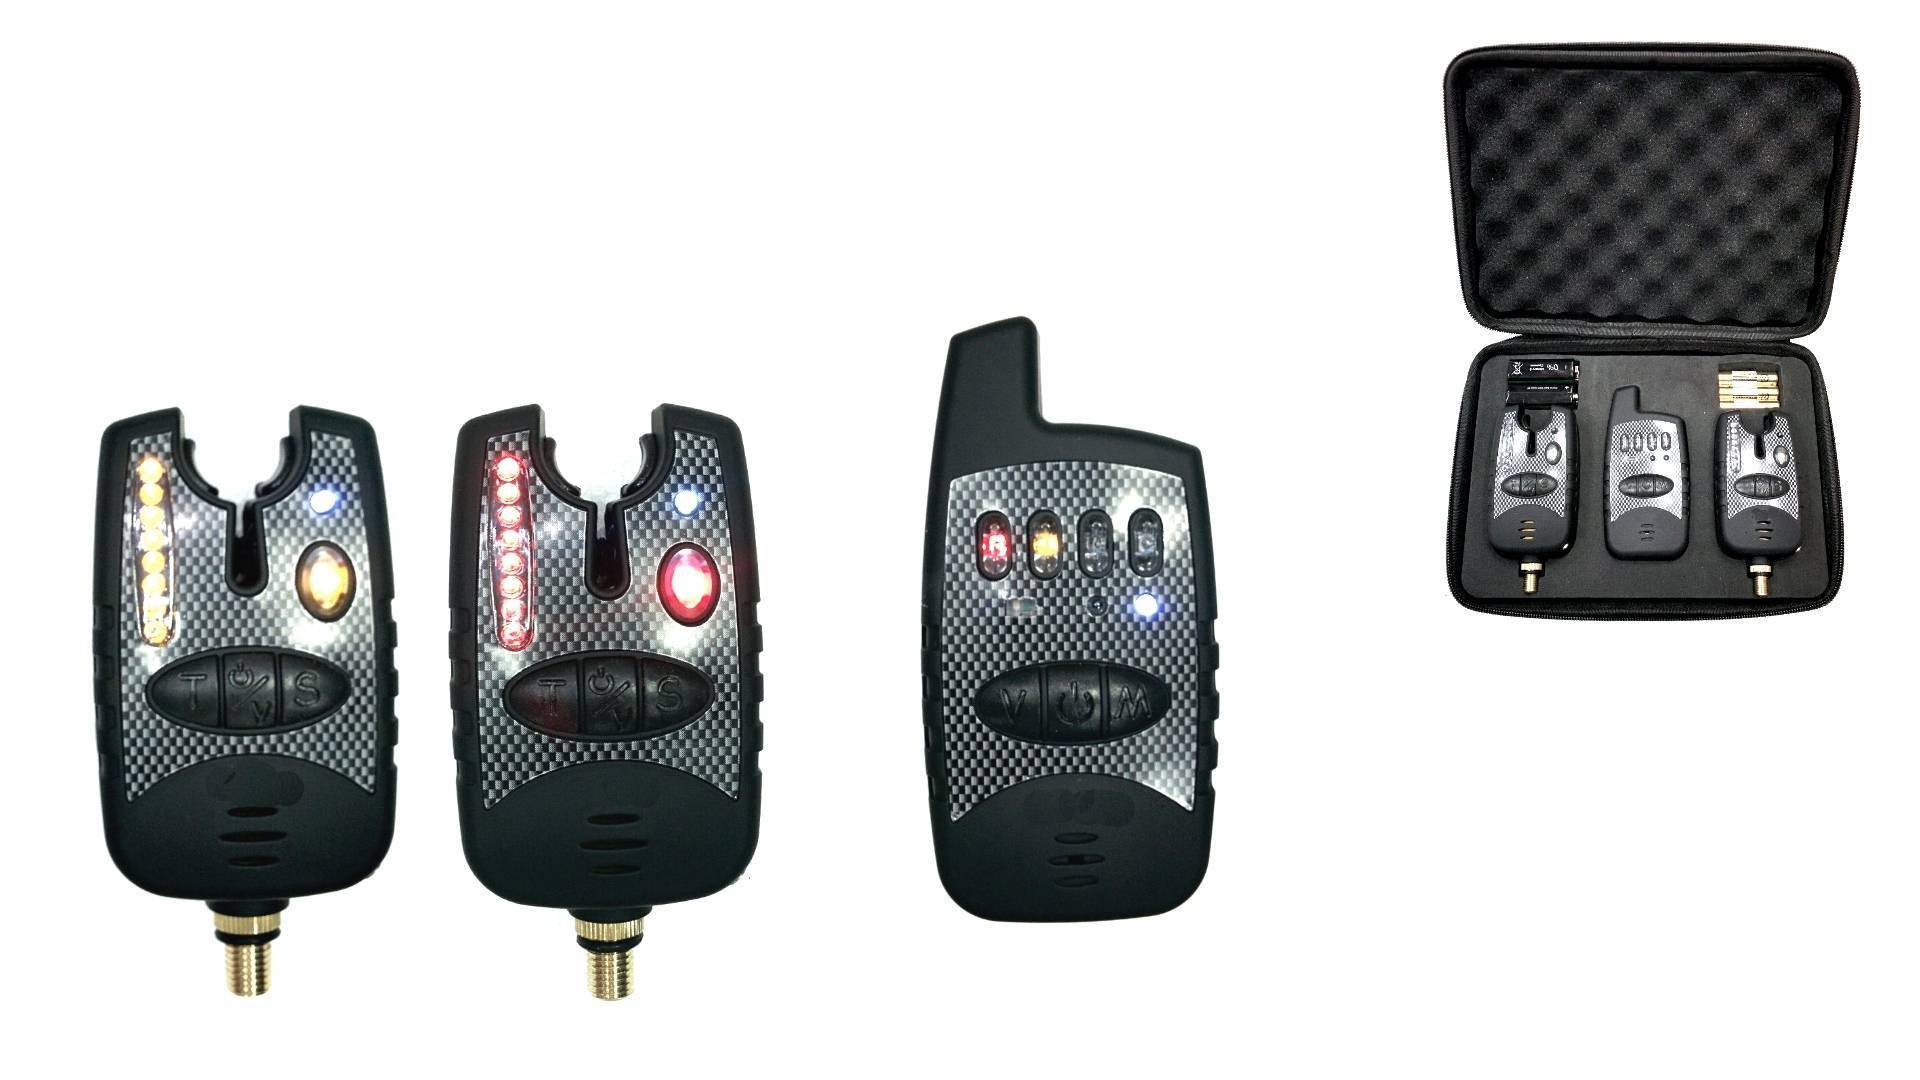 Схемы 4 электронных сигнализатора поклевки и 3 механических - изготовление своими руками